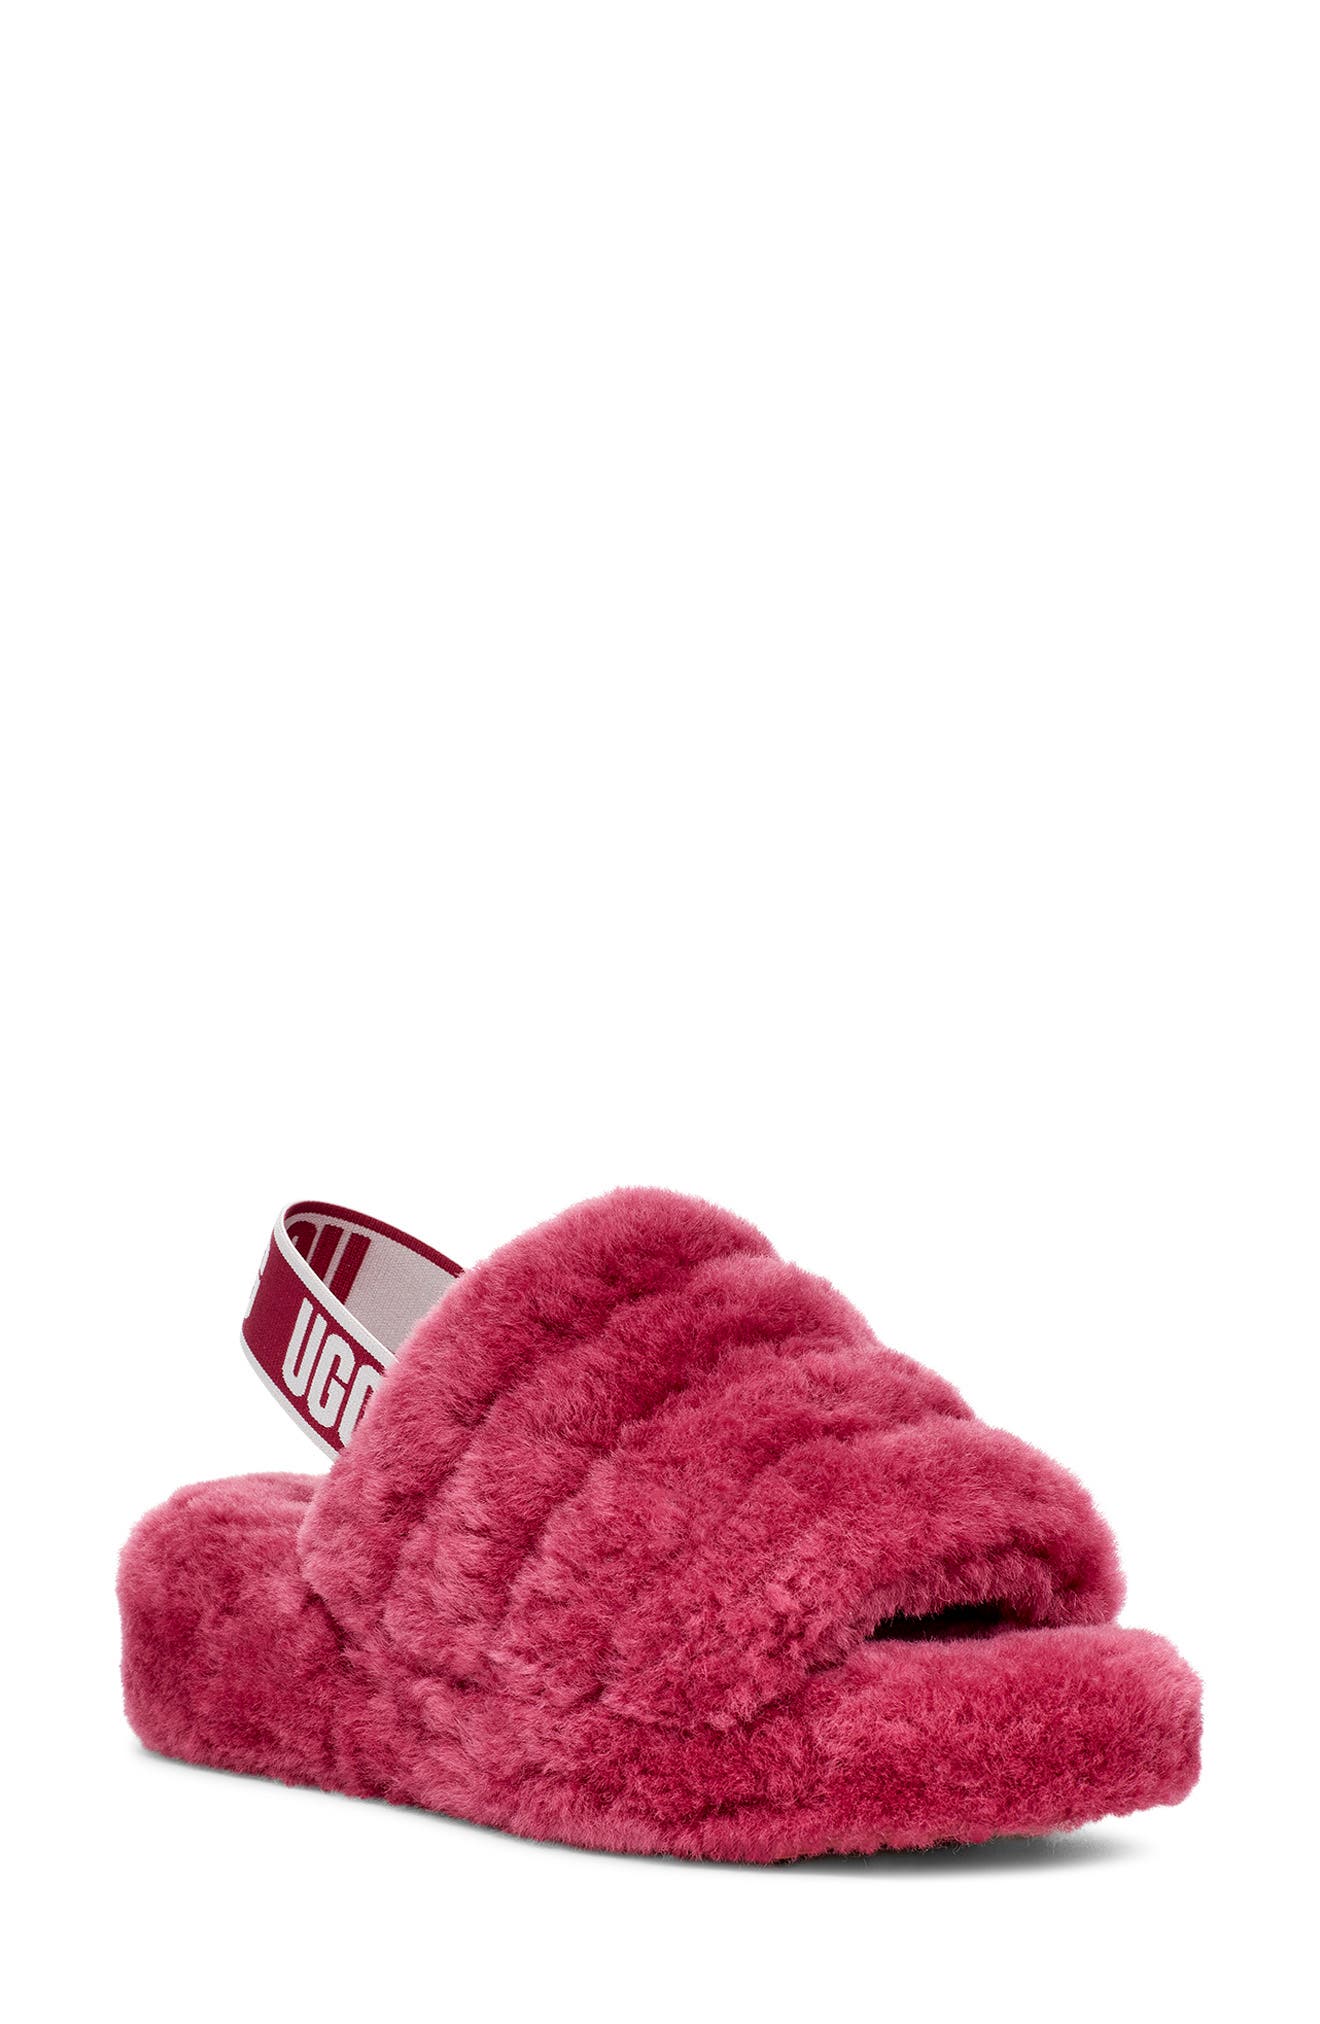 nordstrom rack ugg slippers womens